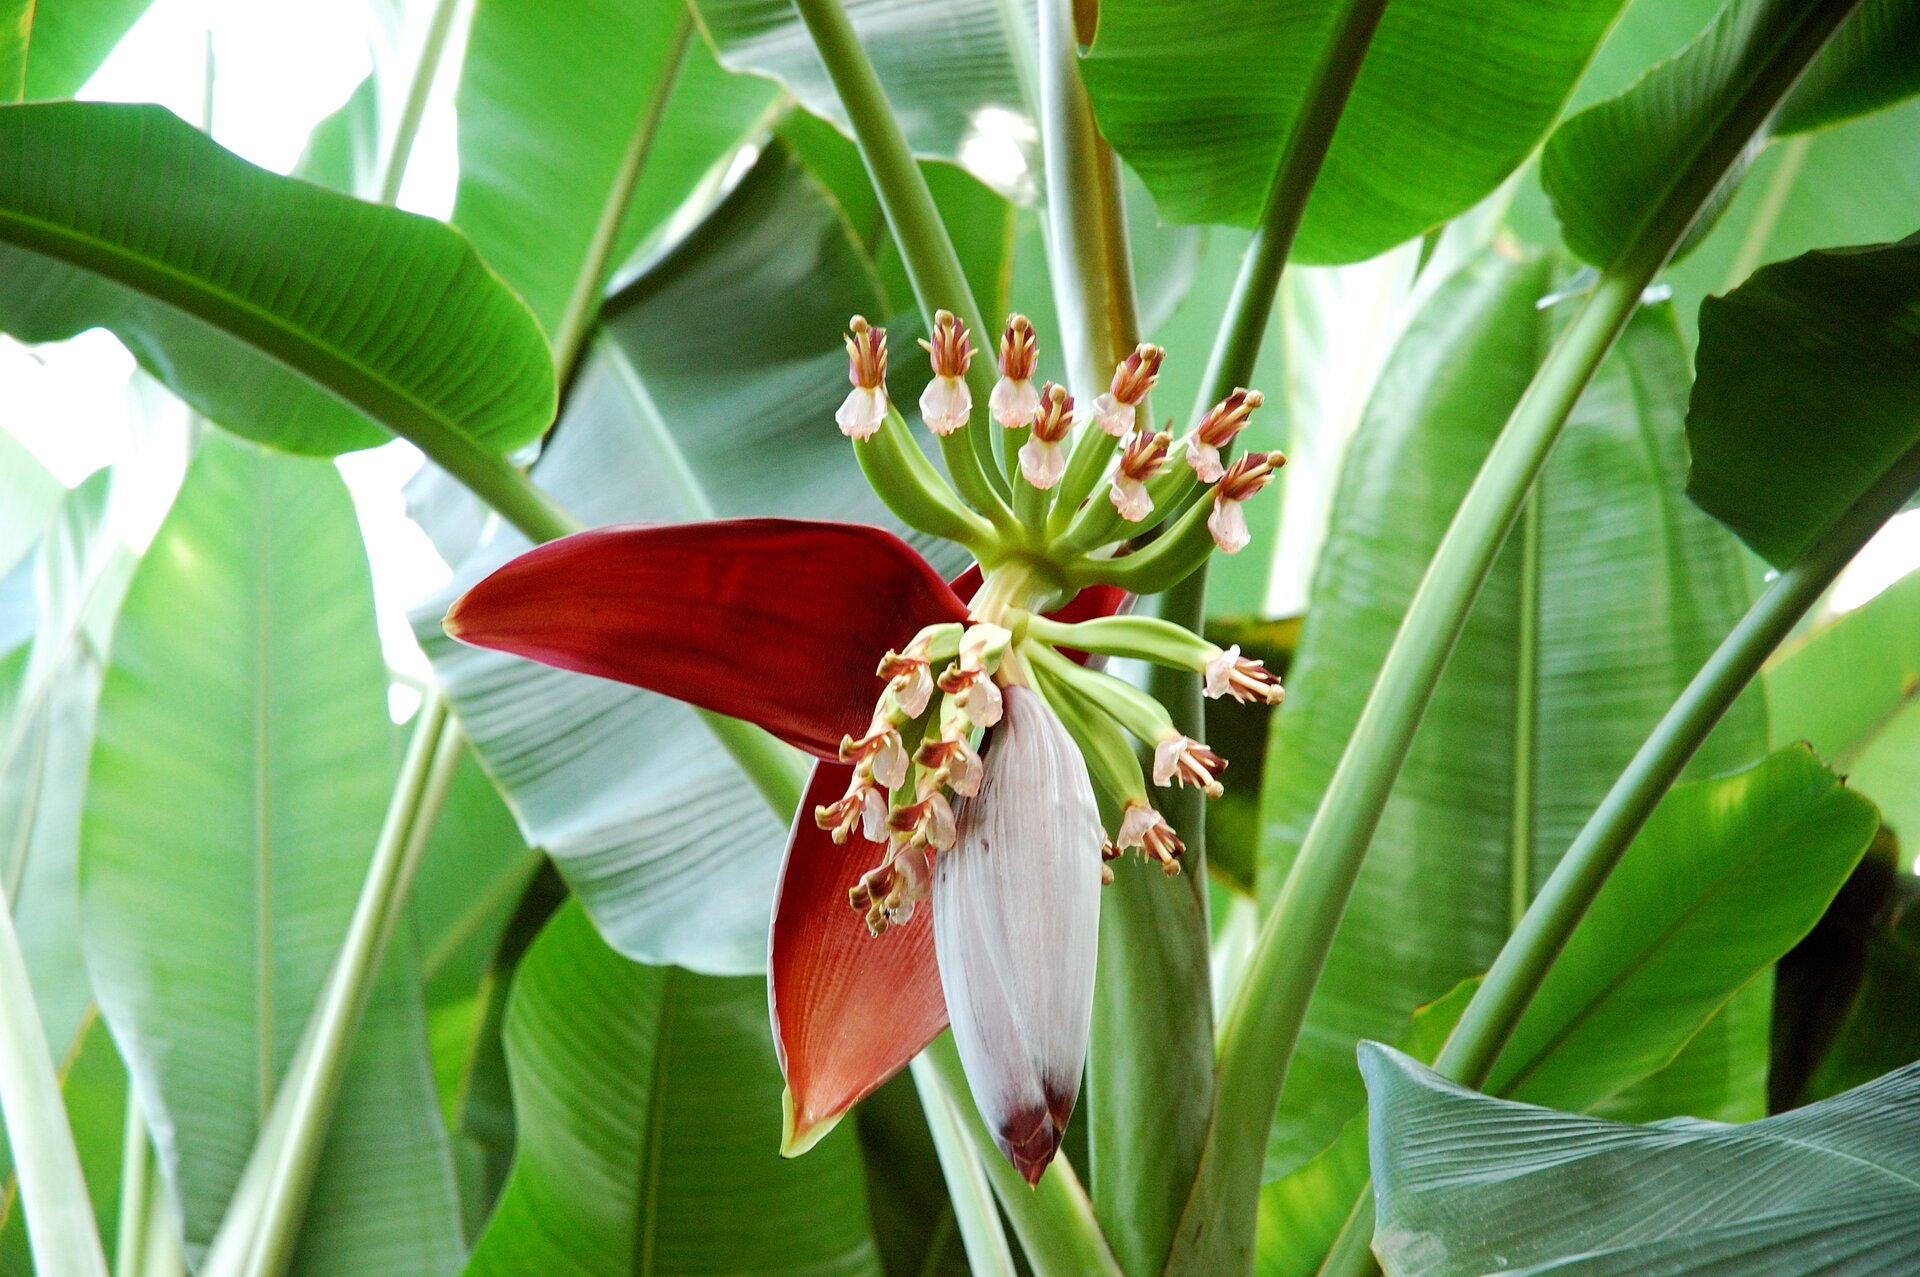 Fotografia druga prezentuje kwitnącego bananowca. Na środku fotografii widoczny kwiatostan osłonięty czerwonymi i białymi płatkami. W tle szerokie zielone liście bananowca.